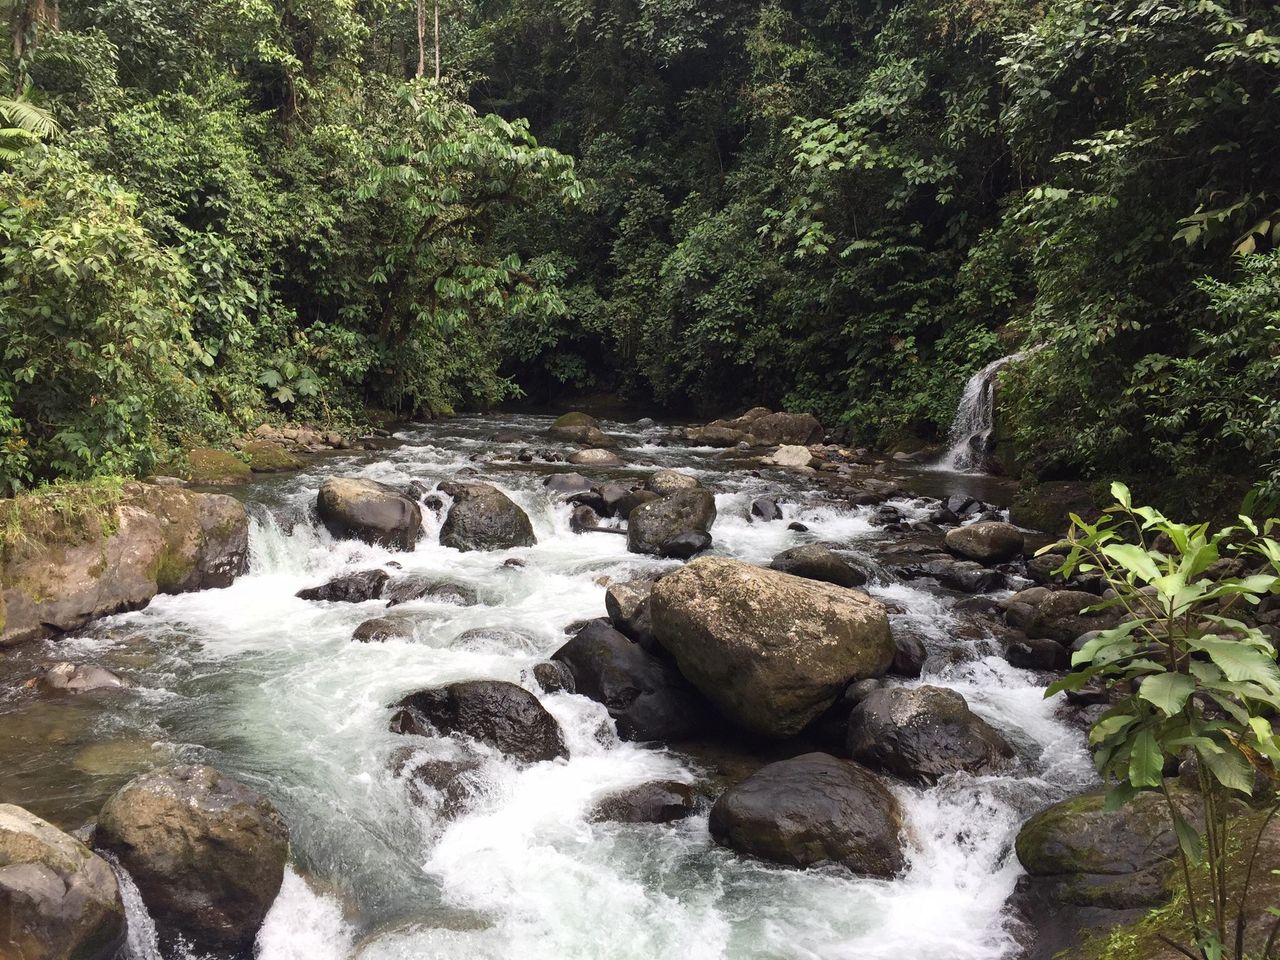 Ontdek de verborgen schoonheid van de Nambillo Waterval in Mindo, Ecuador.